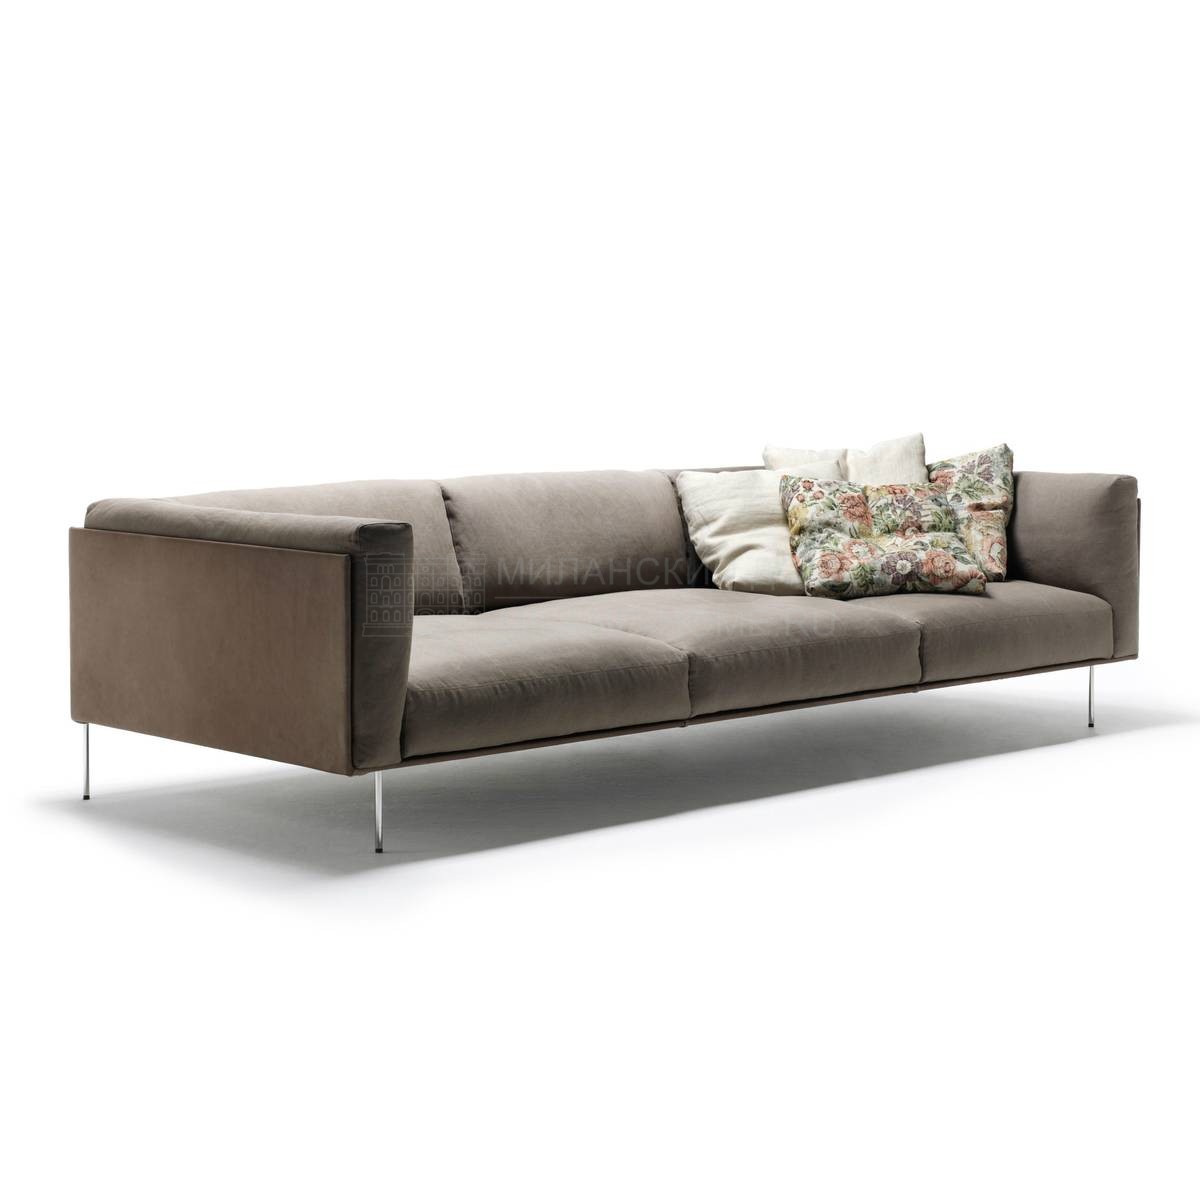 Прямой диван Rod sofa из Италии фабрики LIVING DIVANI